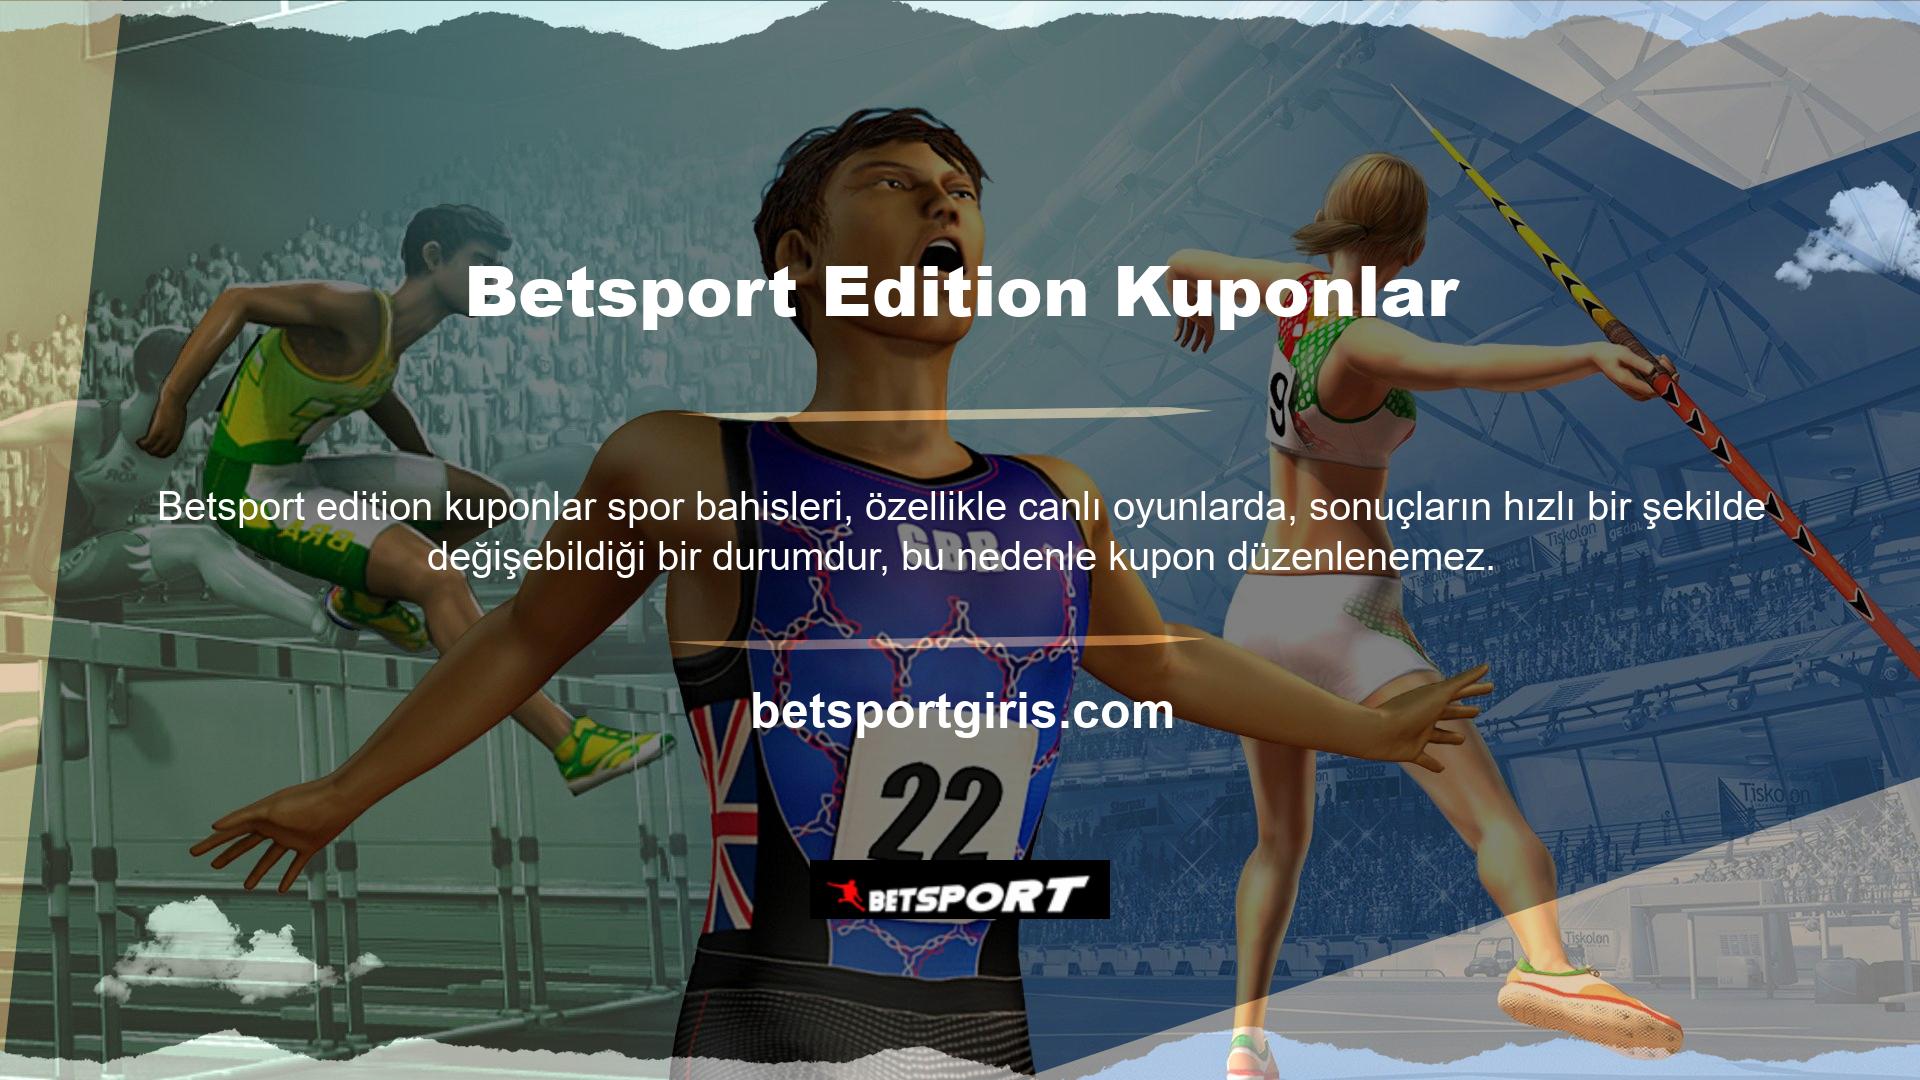 Betsport bu konuda yenilik yaparak kullanıcılara kupon düzenleme imkanı sunmaktadır